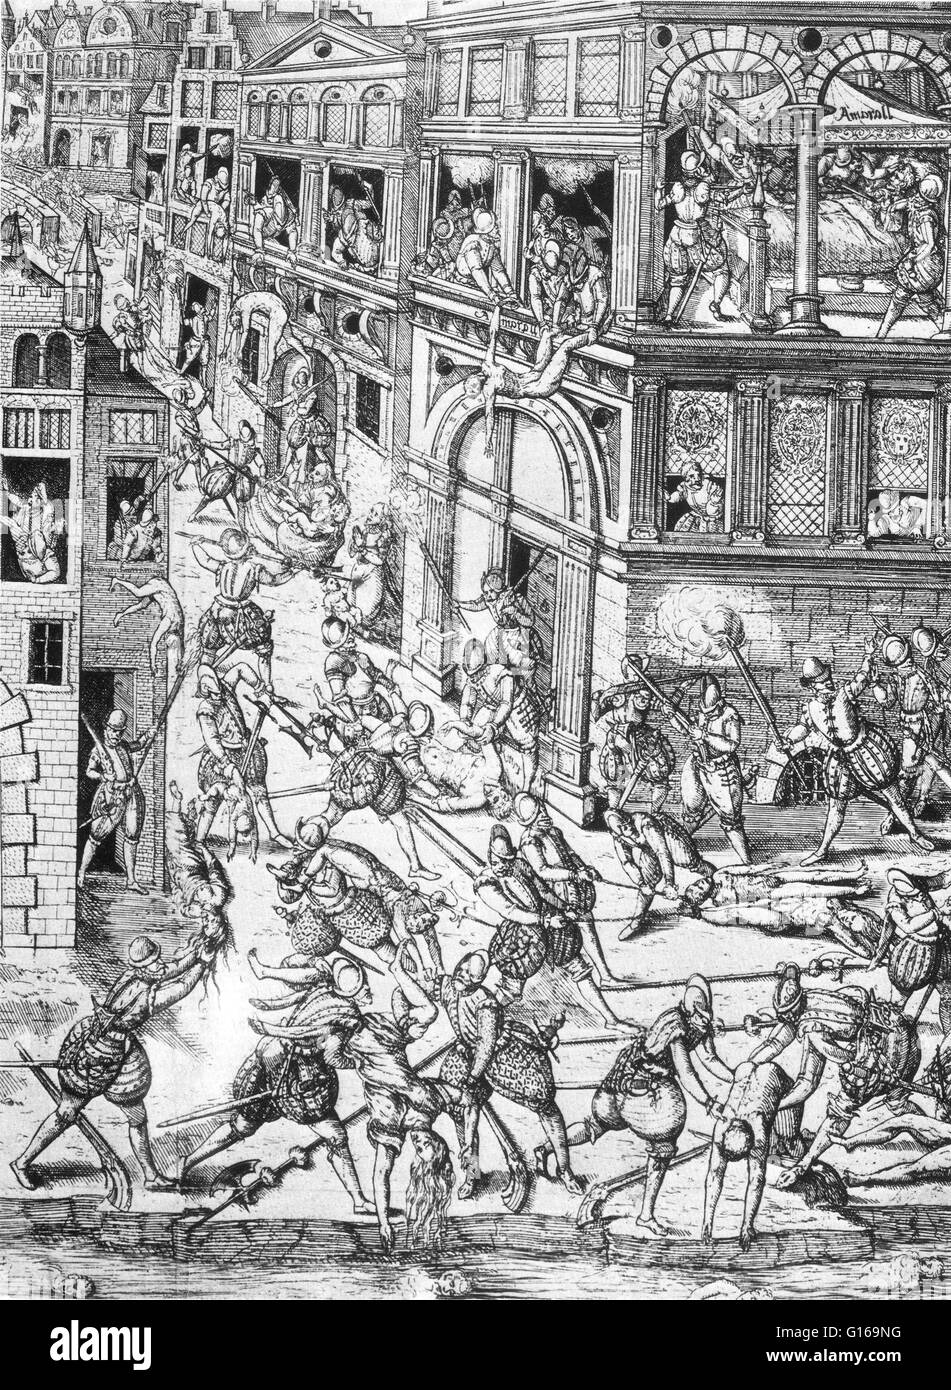 Der St.-Bartholomäus Massaker im Jahr 1572 richtete eine Zielgruppe der Morde, gefolgt von einer Welle von Ausschreitungen und römisch-katholisch, sich sowohl gegen die Hugenotten, während der französischen Religionskriege. Bisher, dass Sie von Catherine de angestiftet worden ' Medici. Das Massaker begann am 23 August 1572, zwei Tage nach dem Attentat auf Admiral Gaspard de Coligny, der militärischen und politischen Führer der Hugenotten. Der König befahl die Tötung einer Gruppe von hugenottischen Führer, einschließlich Coligny, und die Schlachtung in Paris verbreitet. Mehrwöchige, die massac Stockfoto